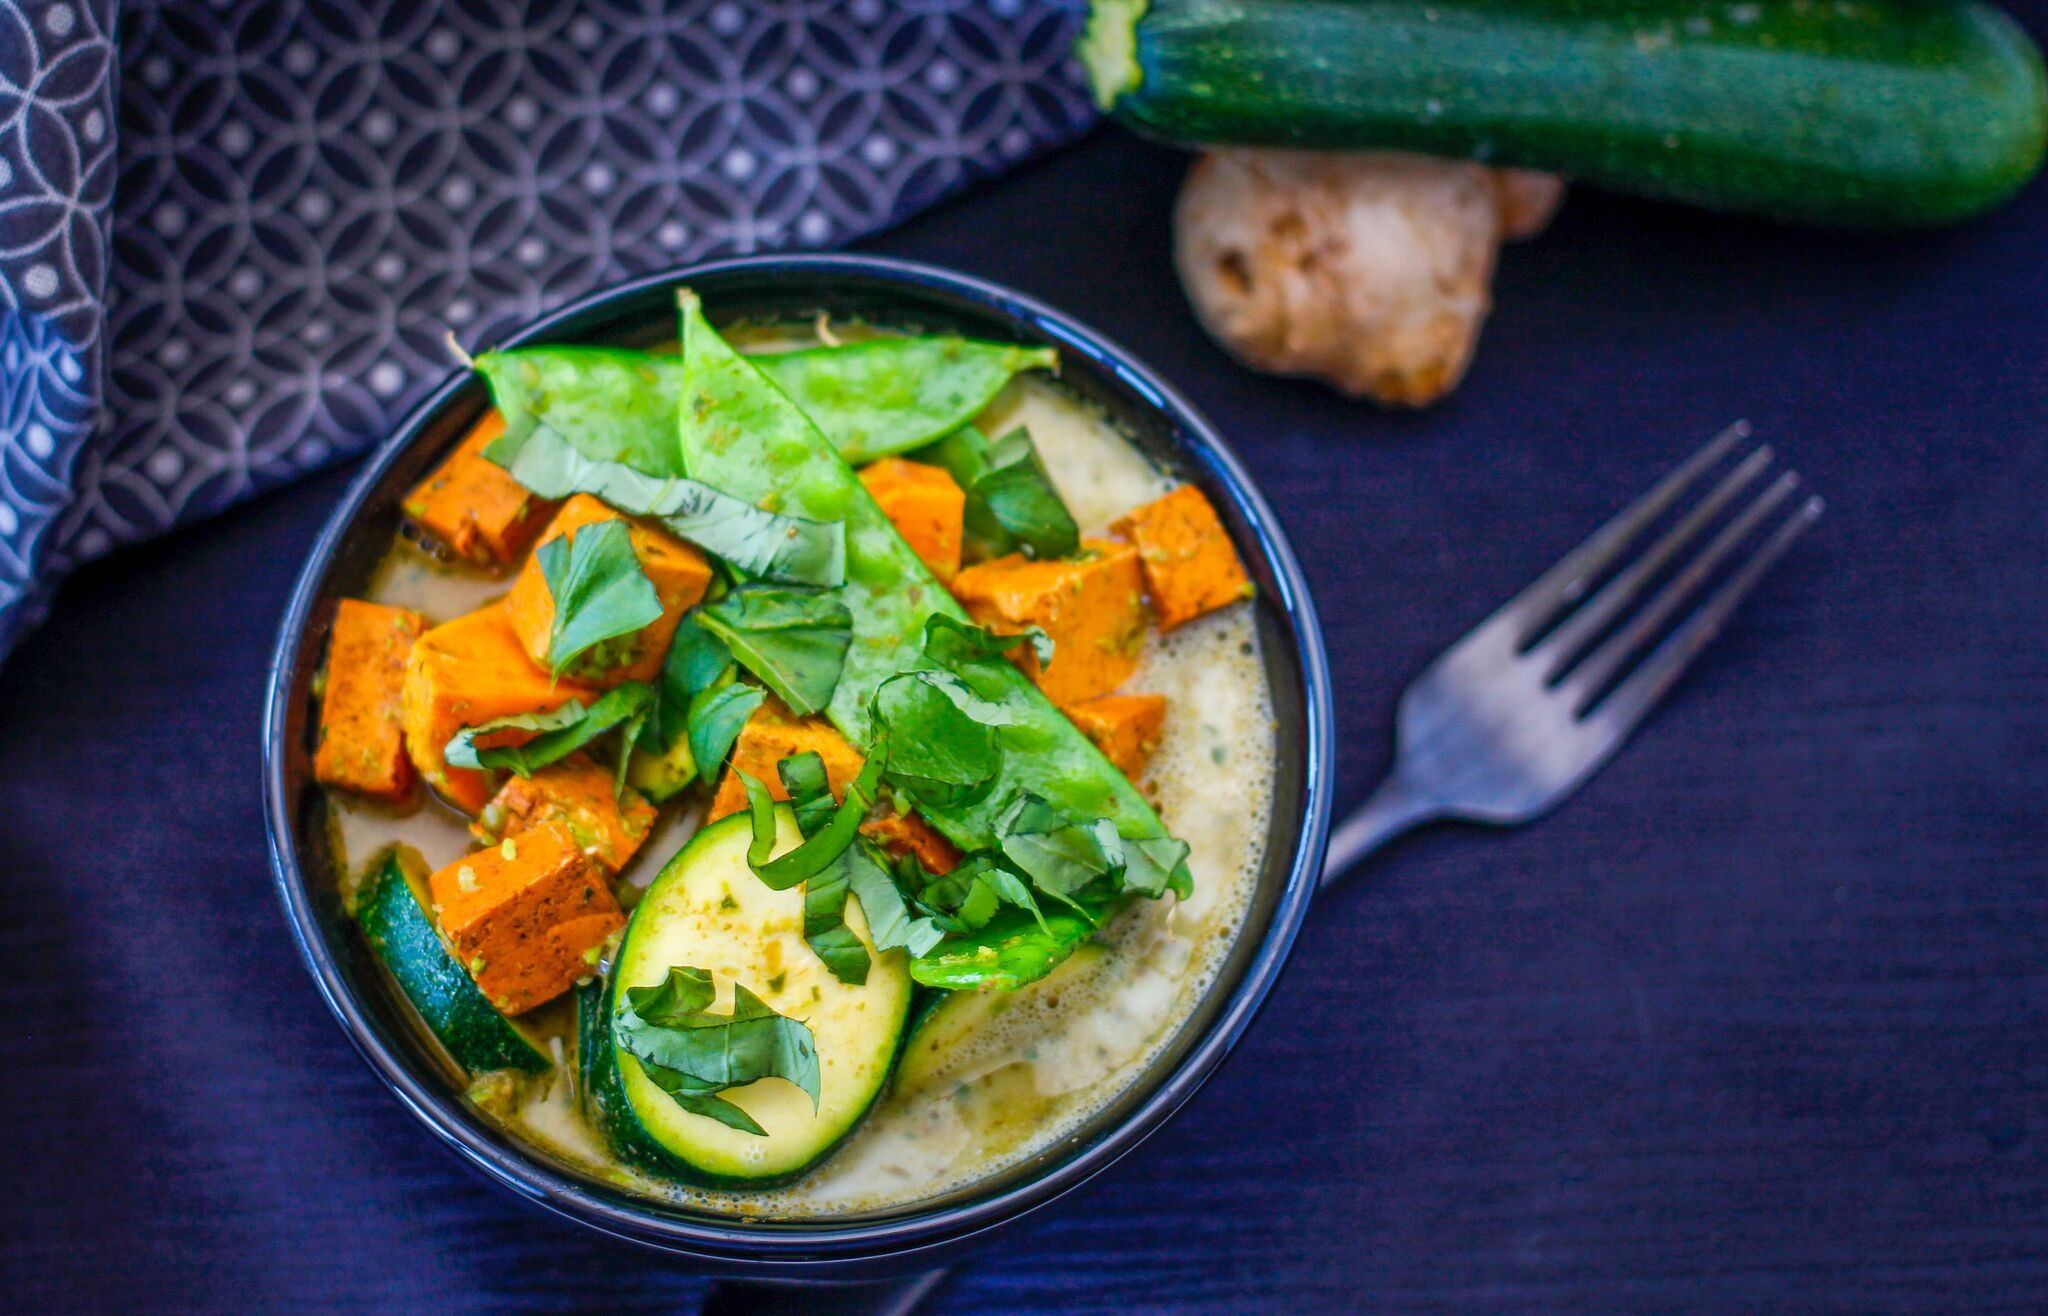 Vegetarian Thai Green Curry Recipes
 Ve arian Thai Green Curry Recipe With Gluten Free Options